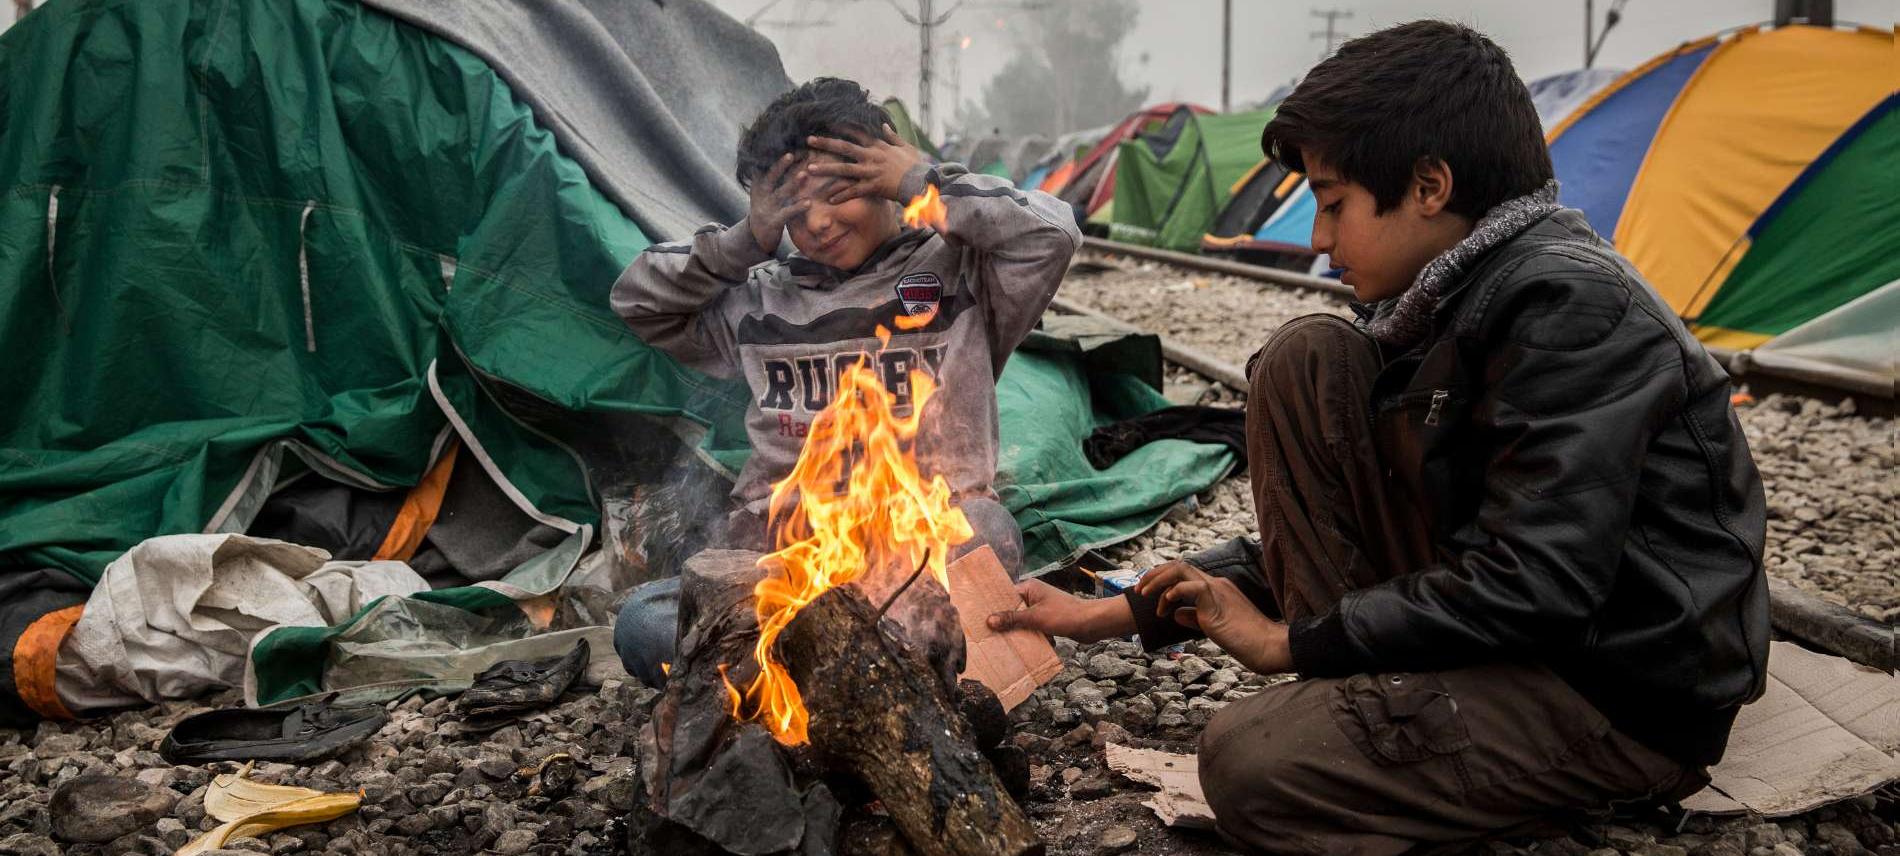 Zwei Kinder wärmen sich im griechischen Flüchtlingscamp Idomeni an einem offenen Feuer. Foto: Olmo Calvo